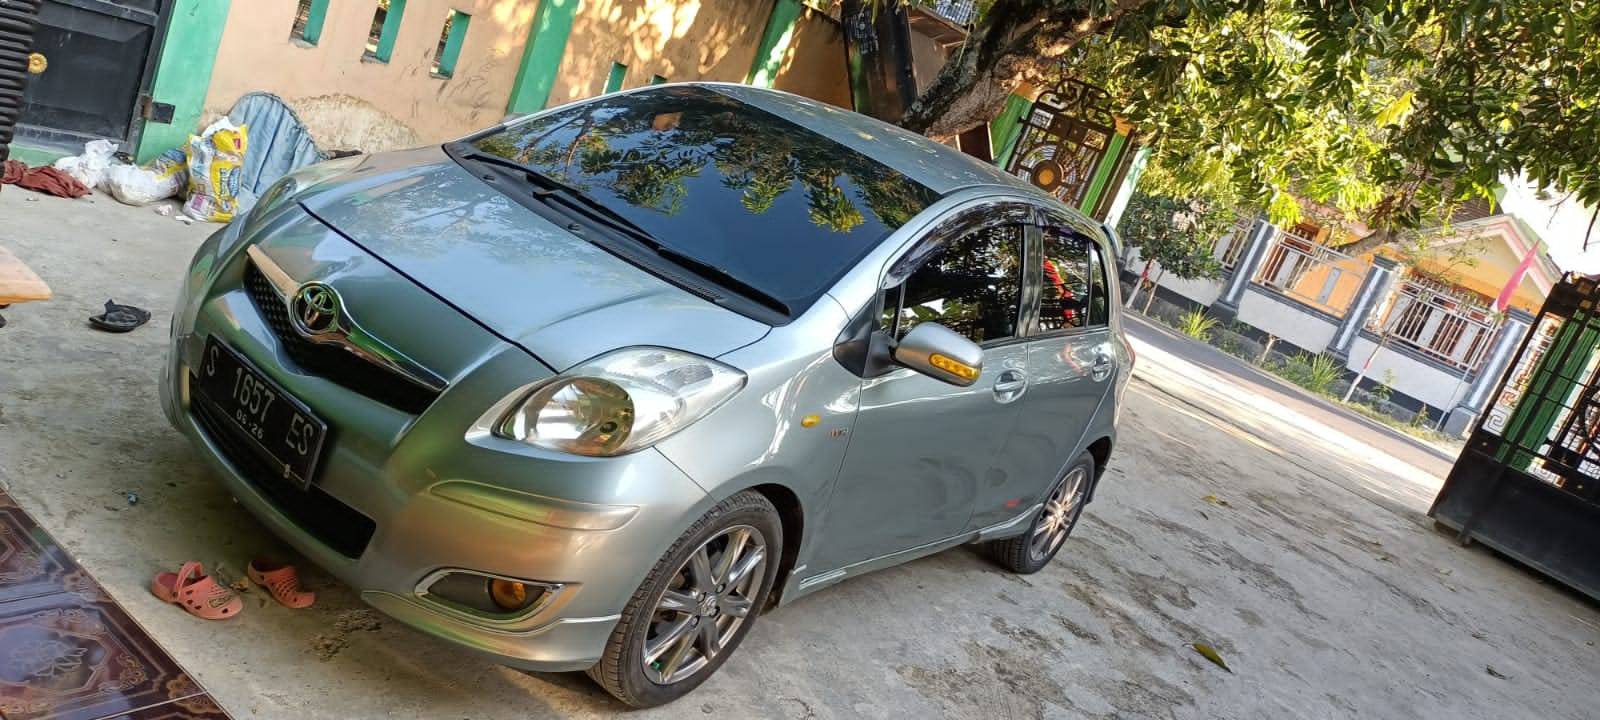 Mobil Bekas Yaris Harga Kredit Murah Di Surabaya Februari 2022